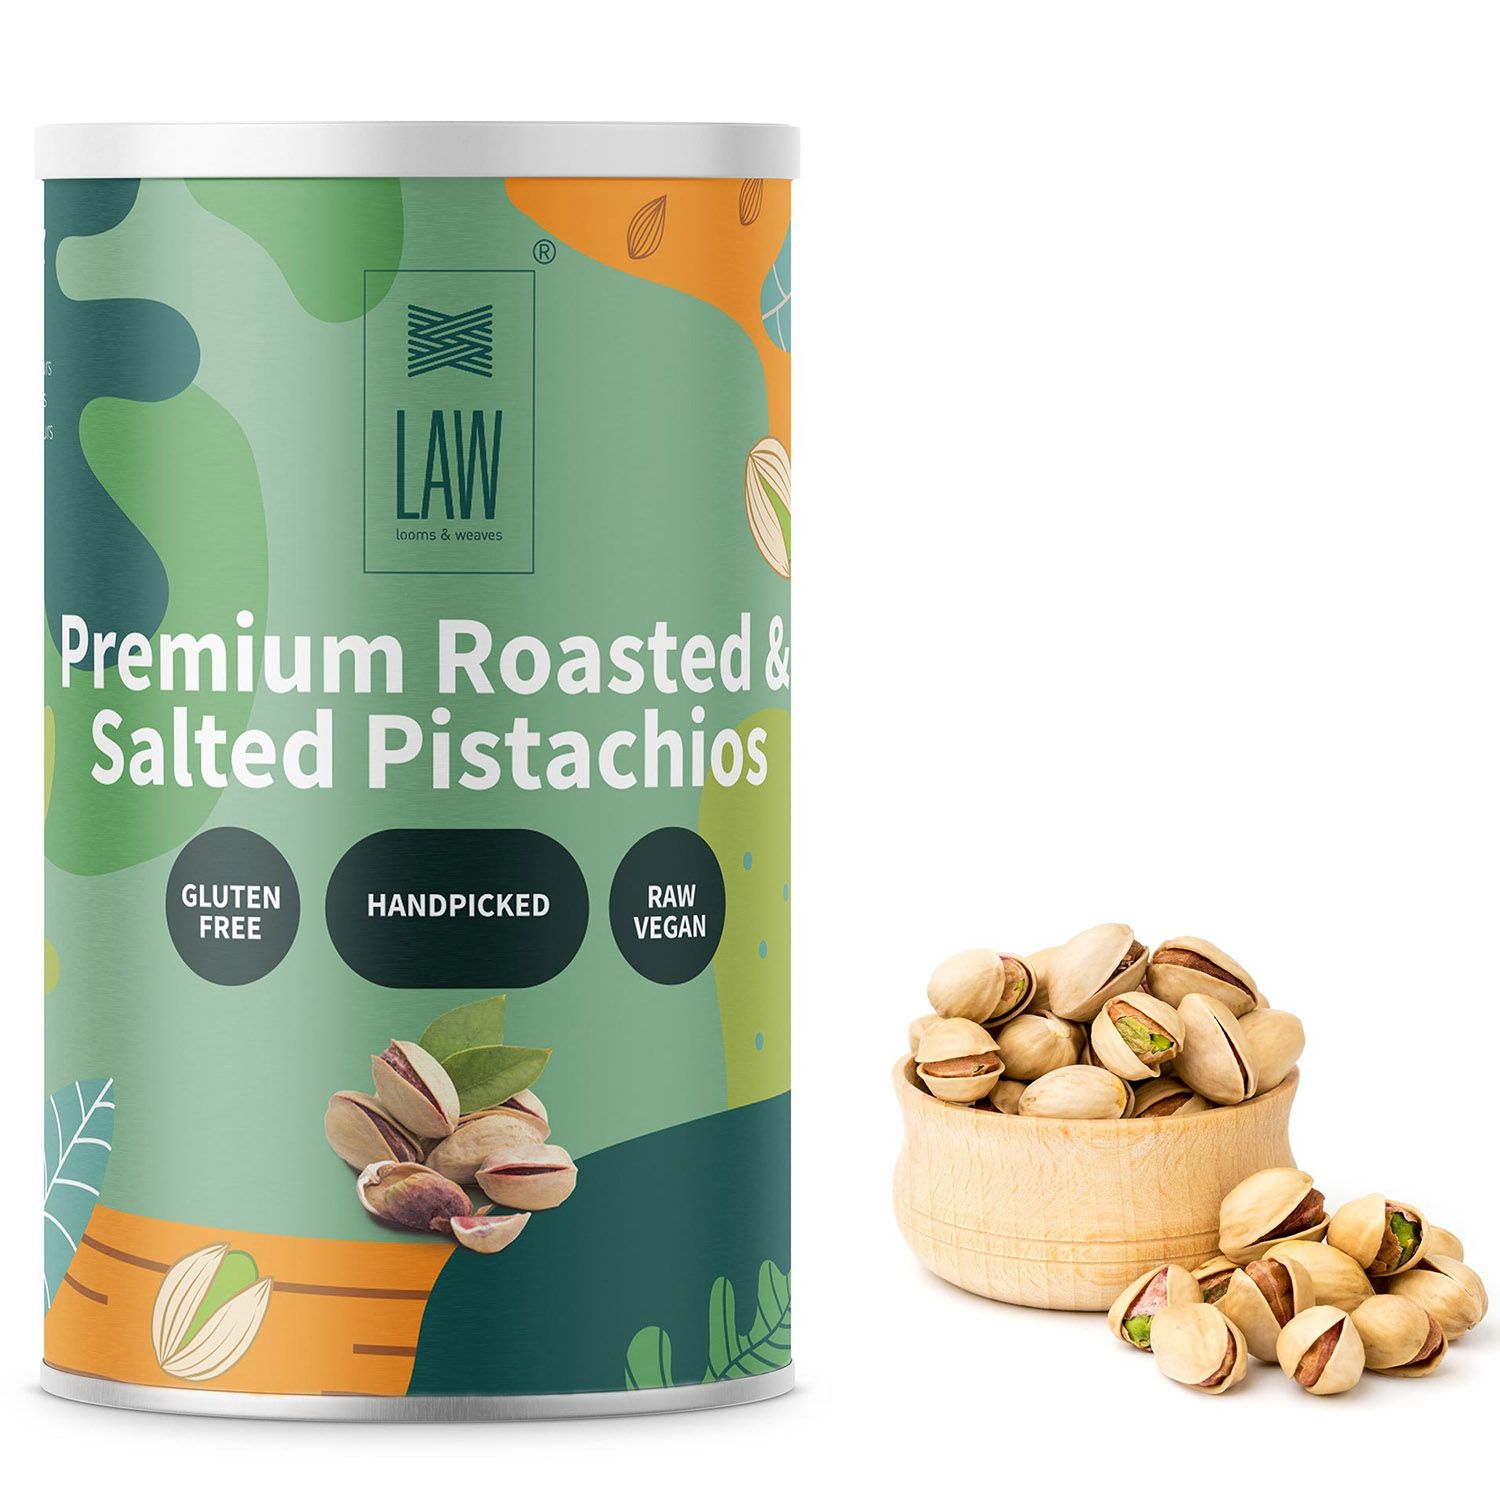 Premium Roasted & Salted Pistachios